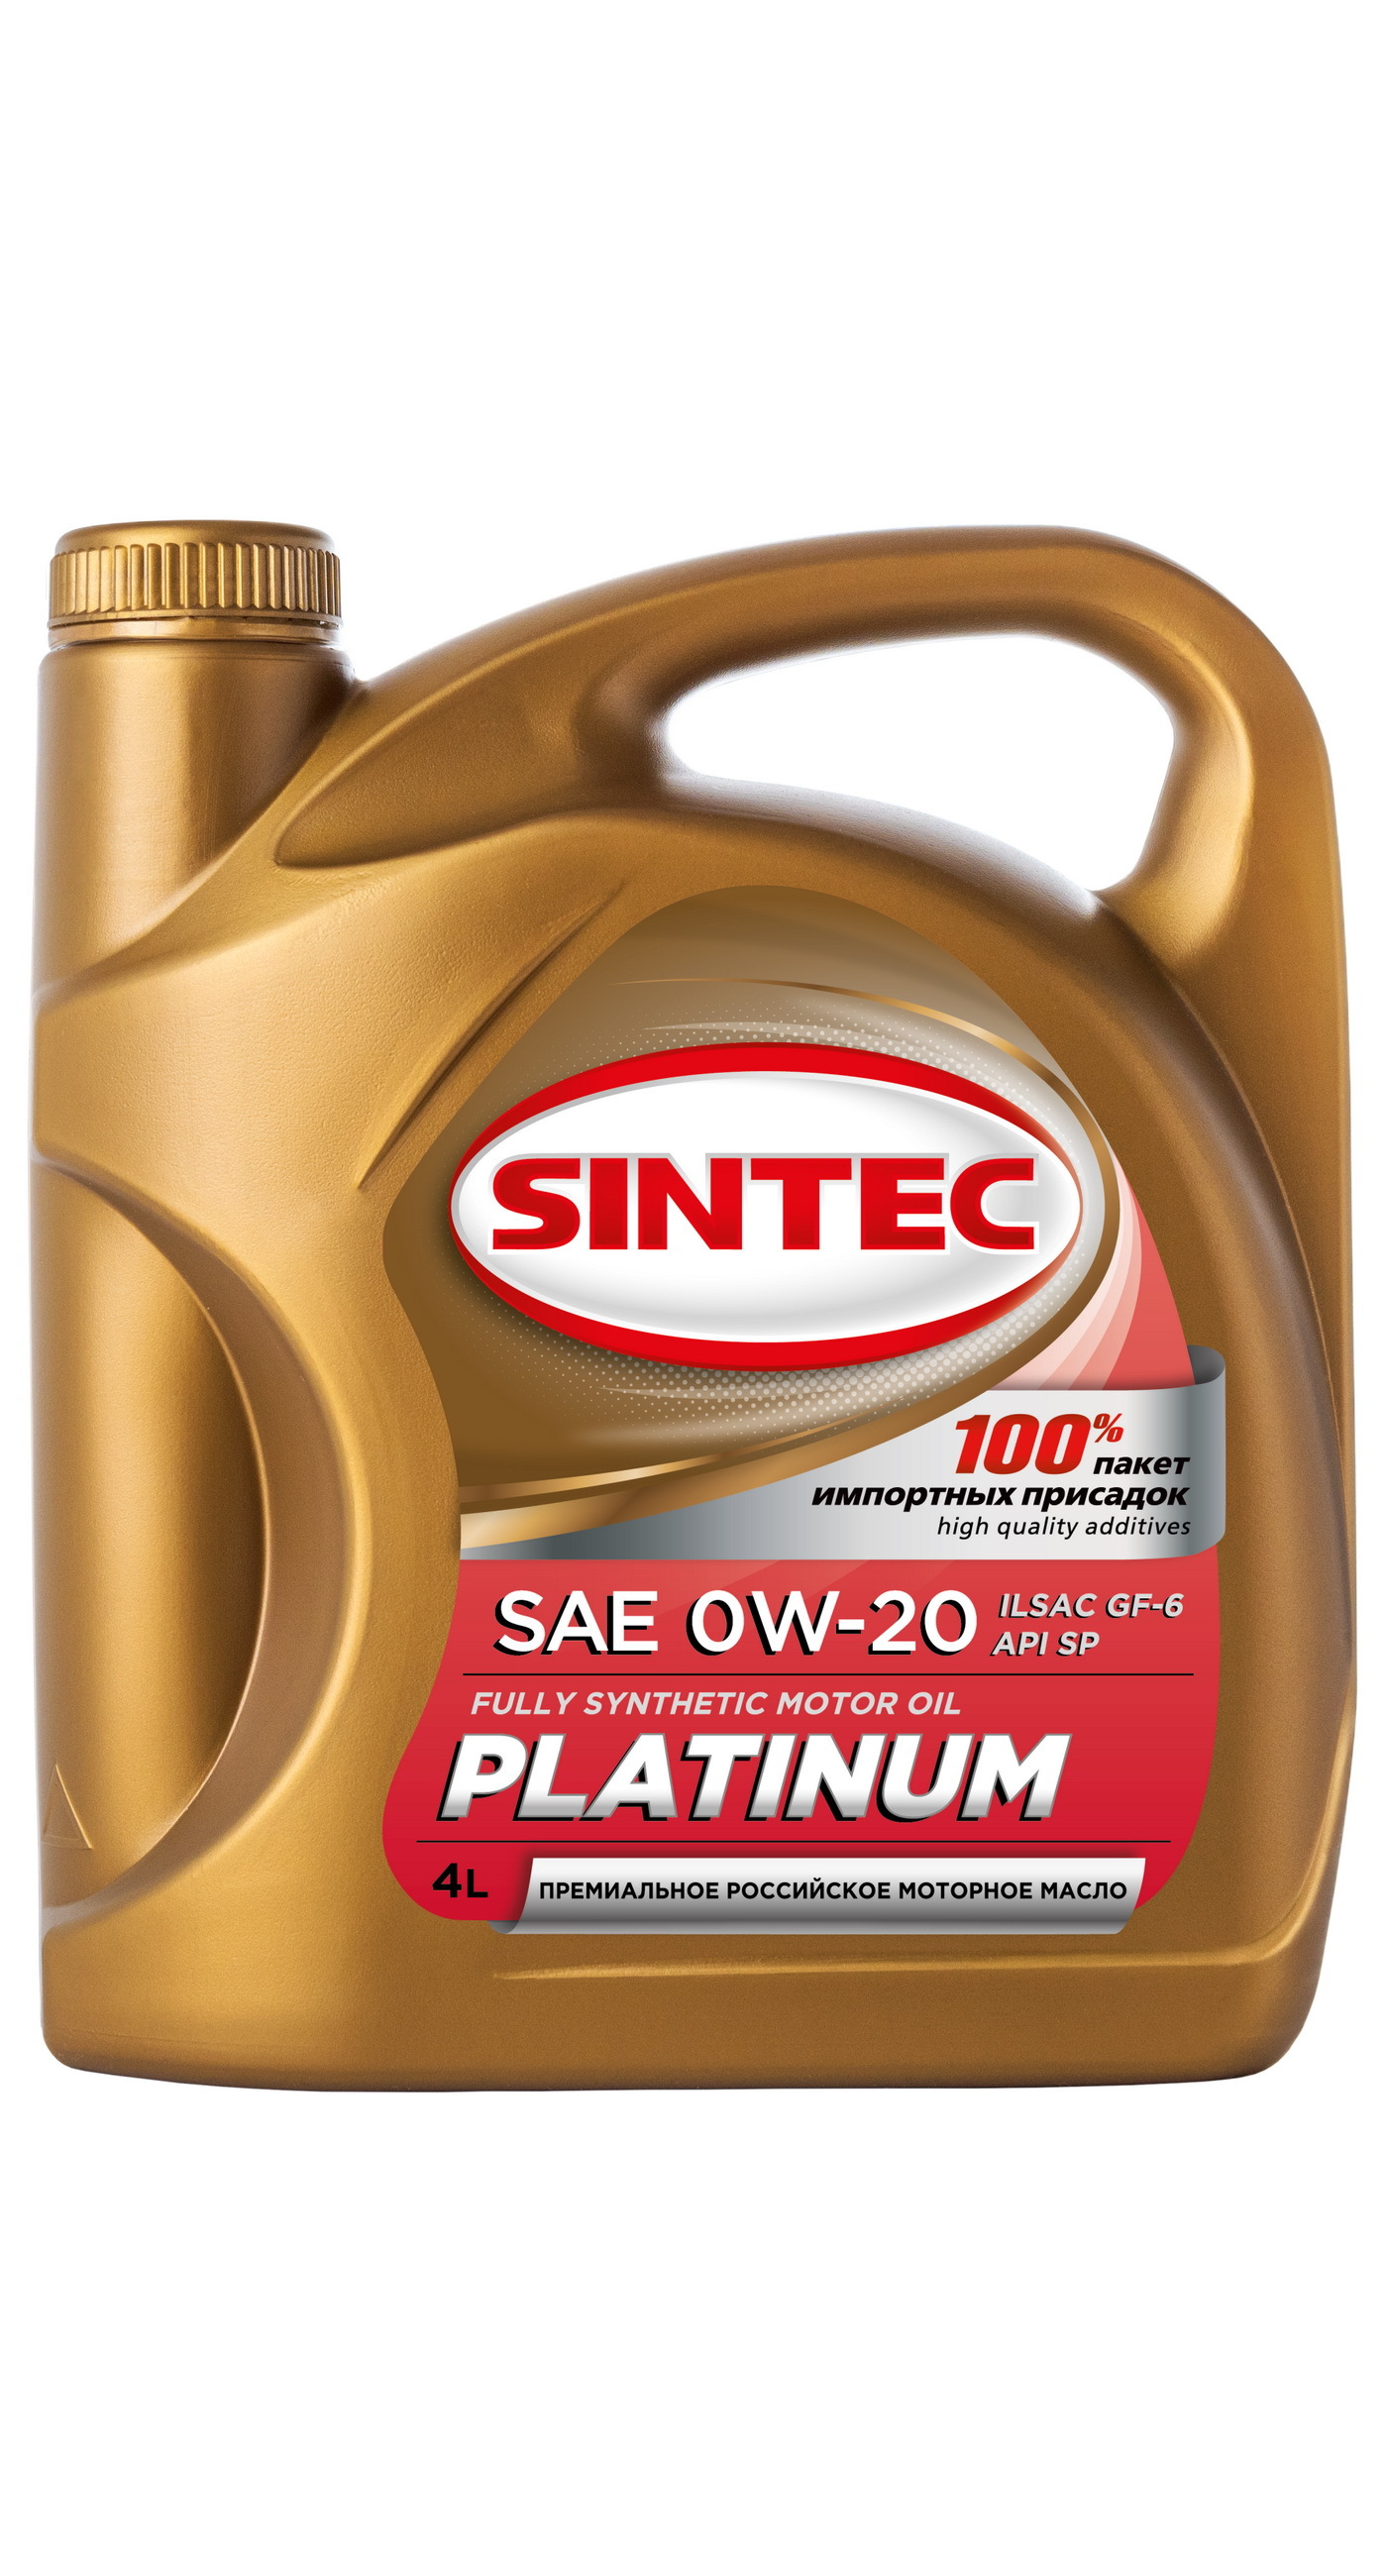 Сайт моторных масел синтек. Sintec Platinum 5w-30. Масло Синтек 10w 40. Sintec Premium 5w-40. Масло Синтек 10w 40 полусинтетика.